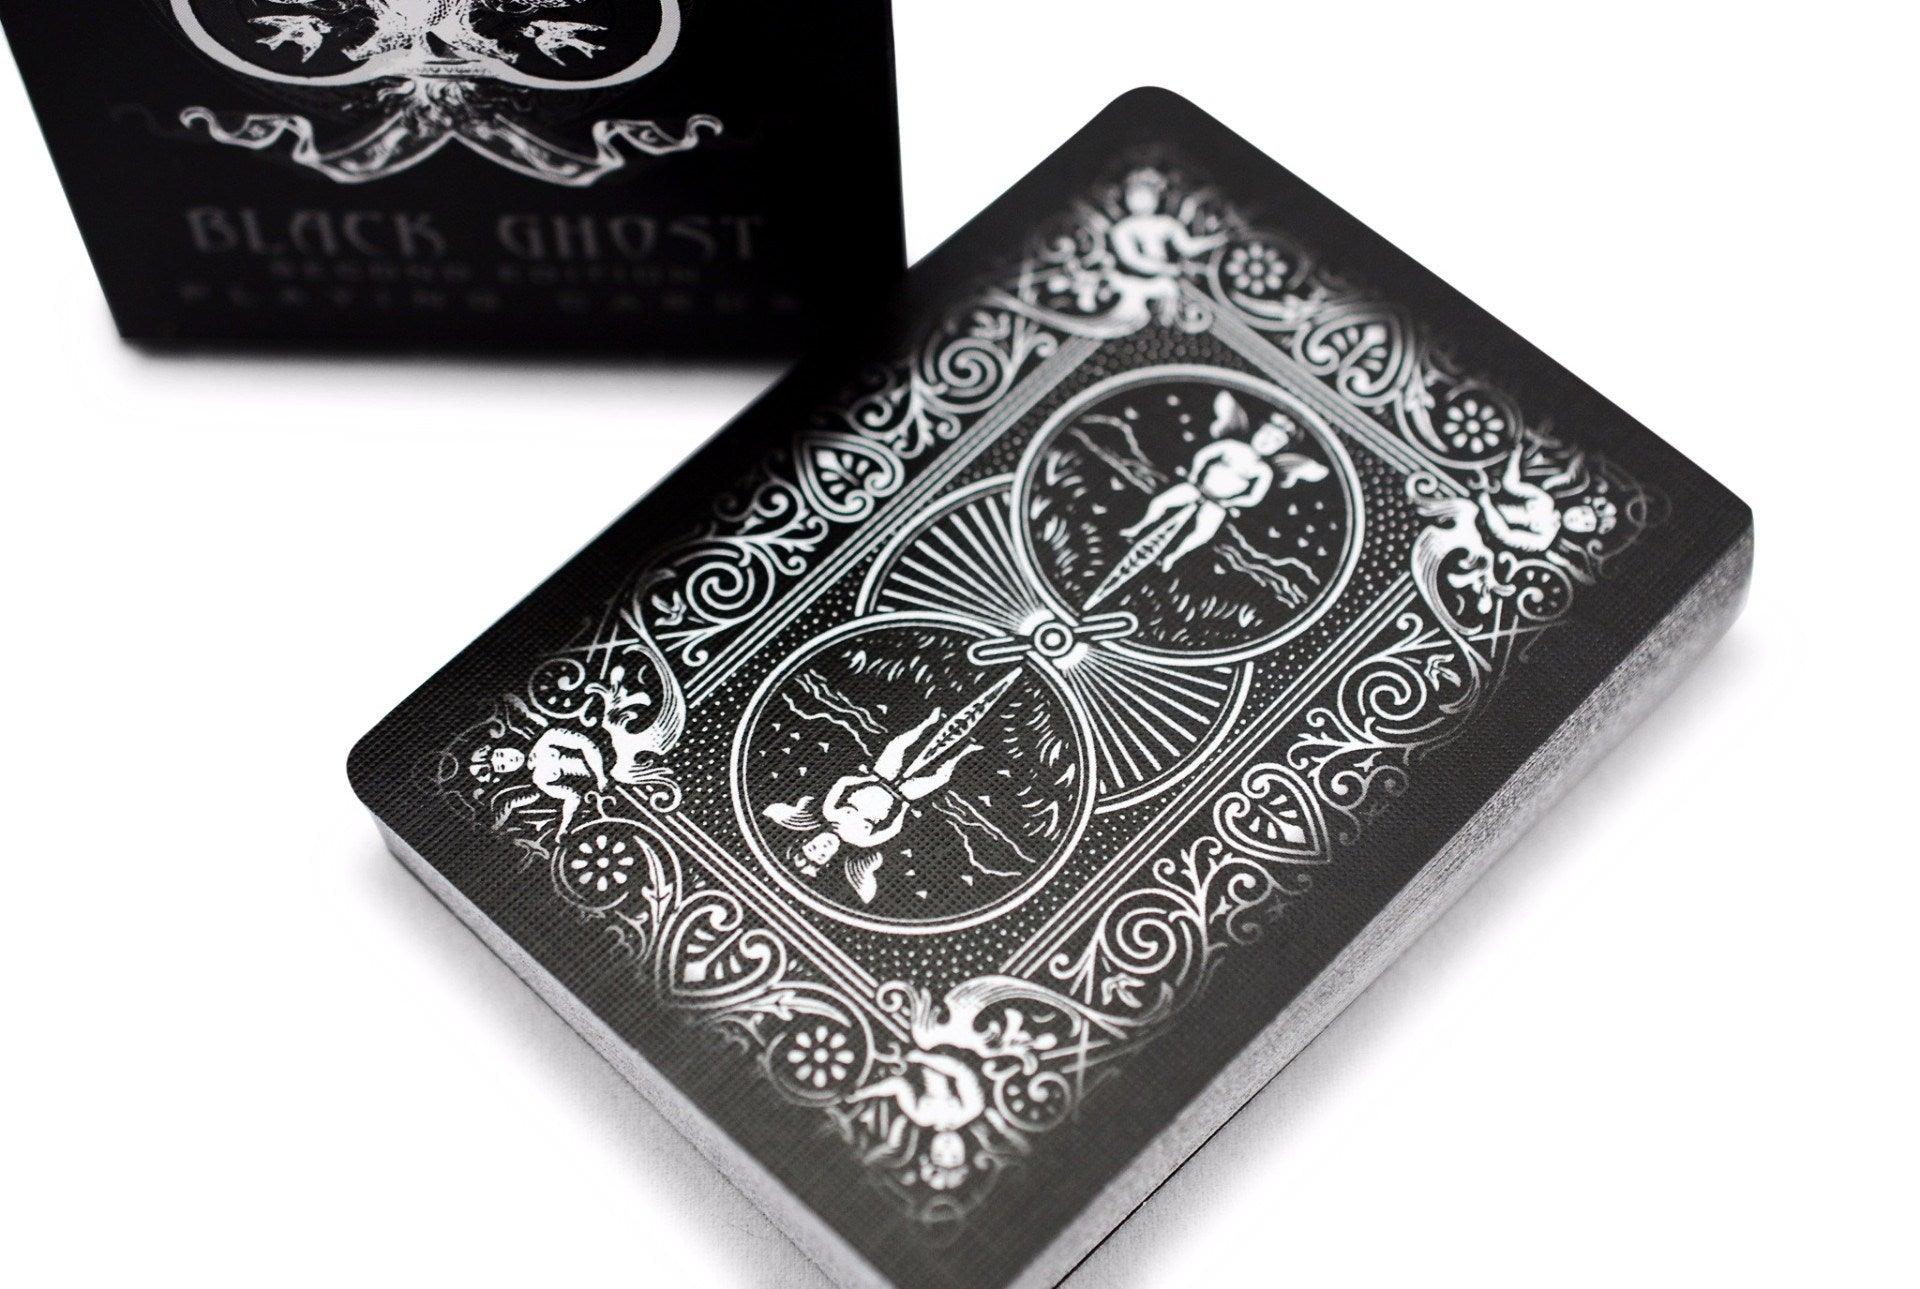 black ghost deck